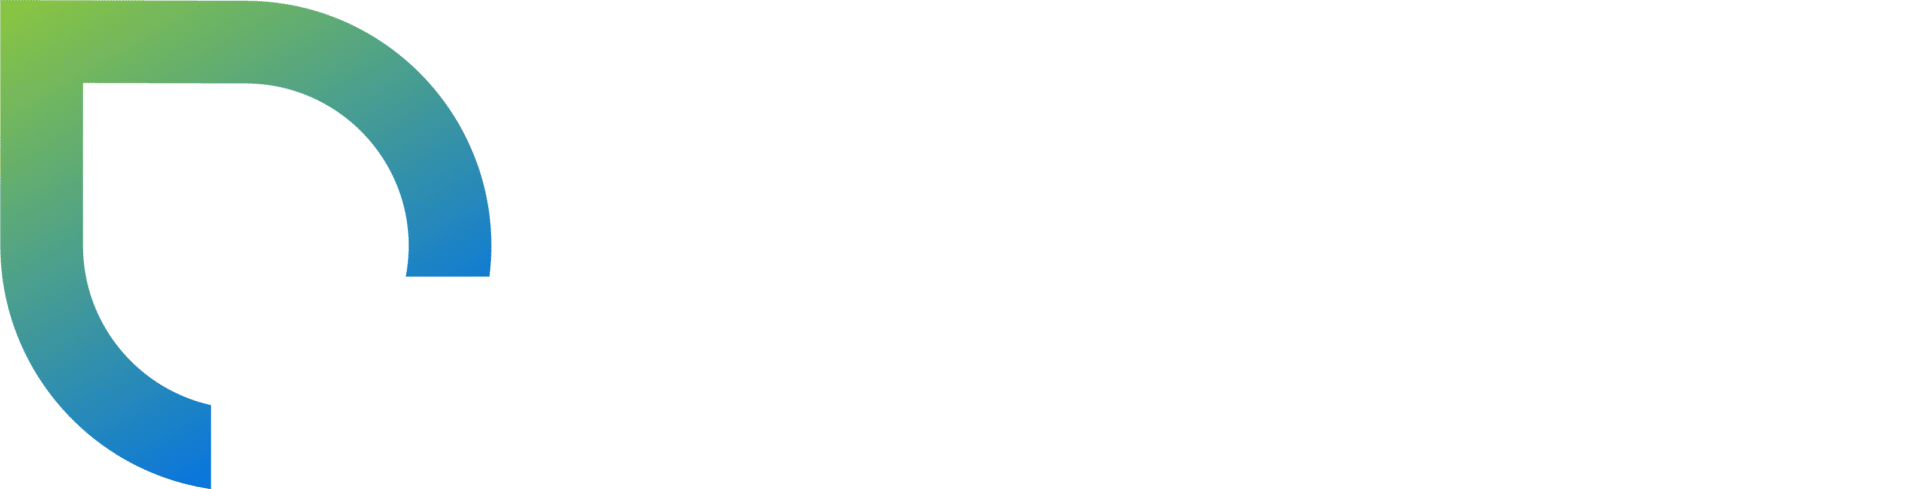 draustadt-haustechnik-logo-final-quer-schrift-weiss